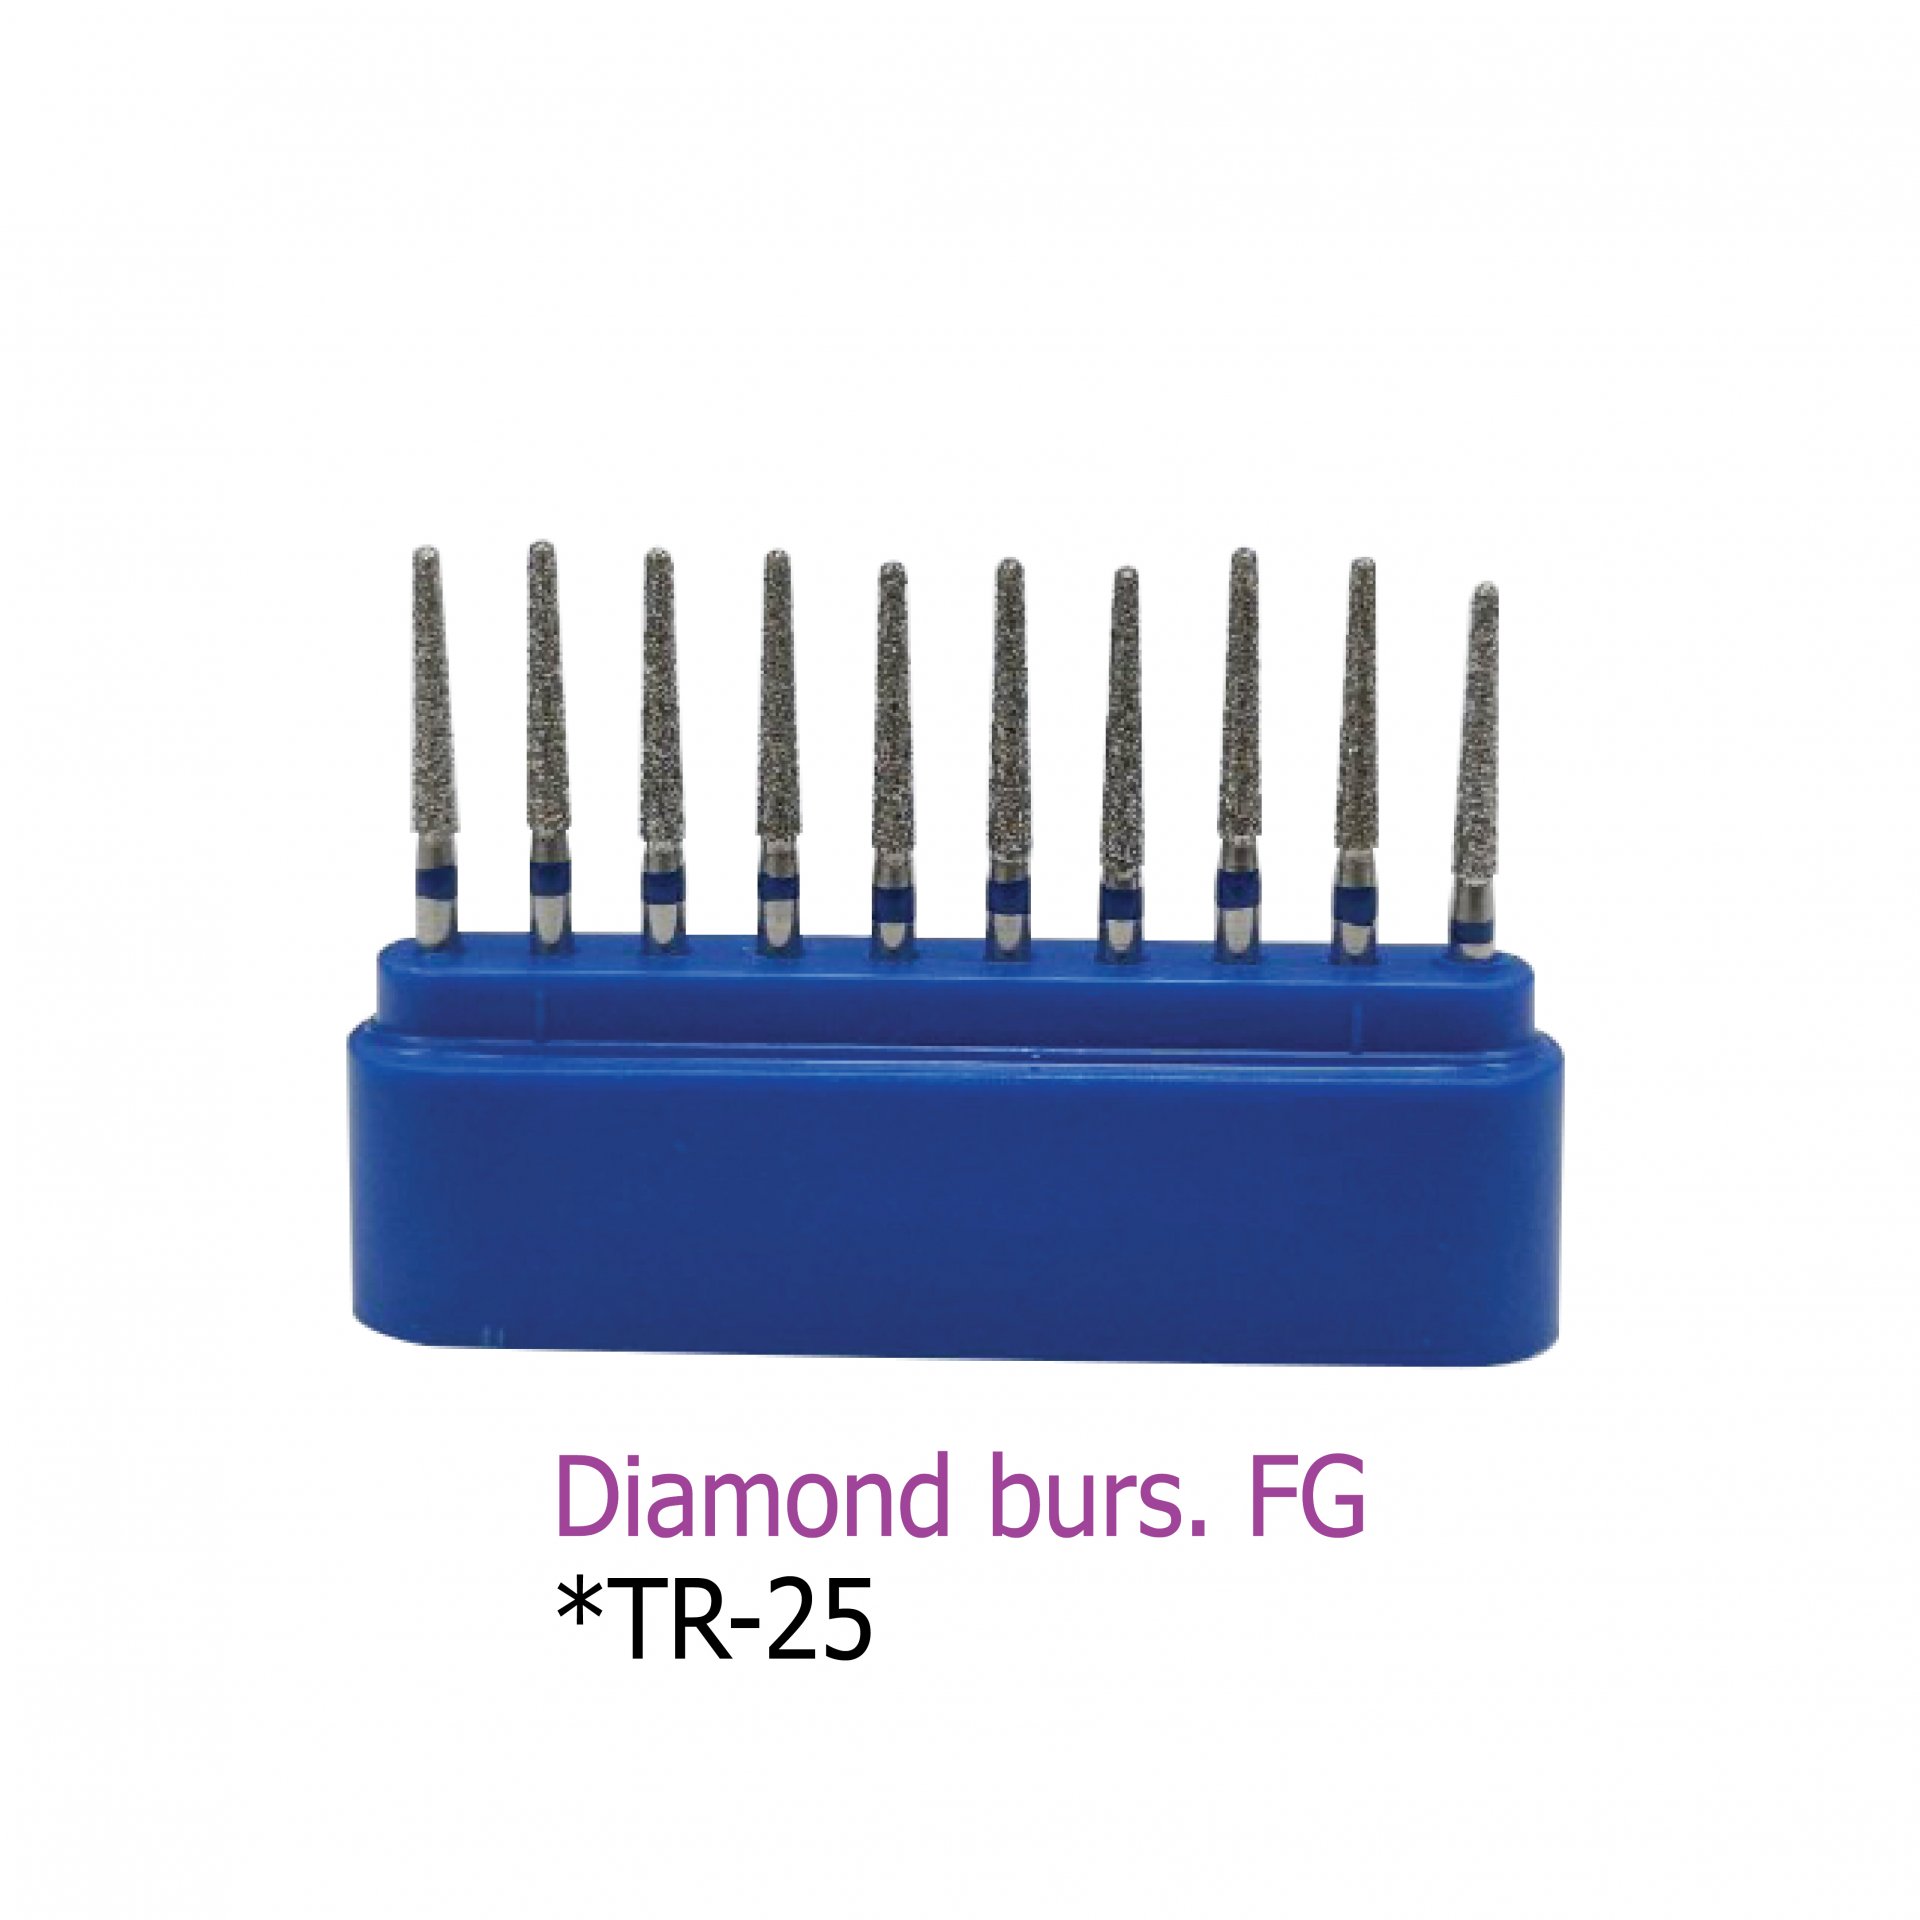 Diamond burs. FG *TR-25